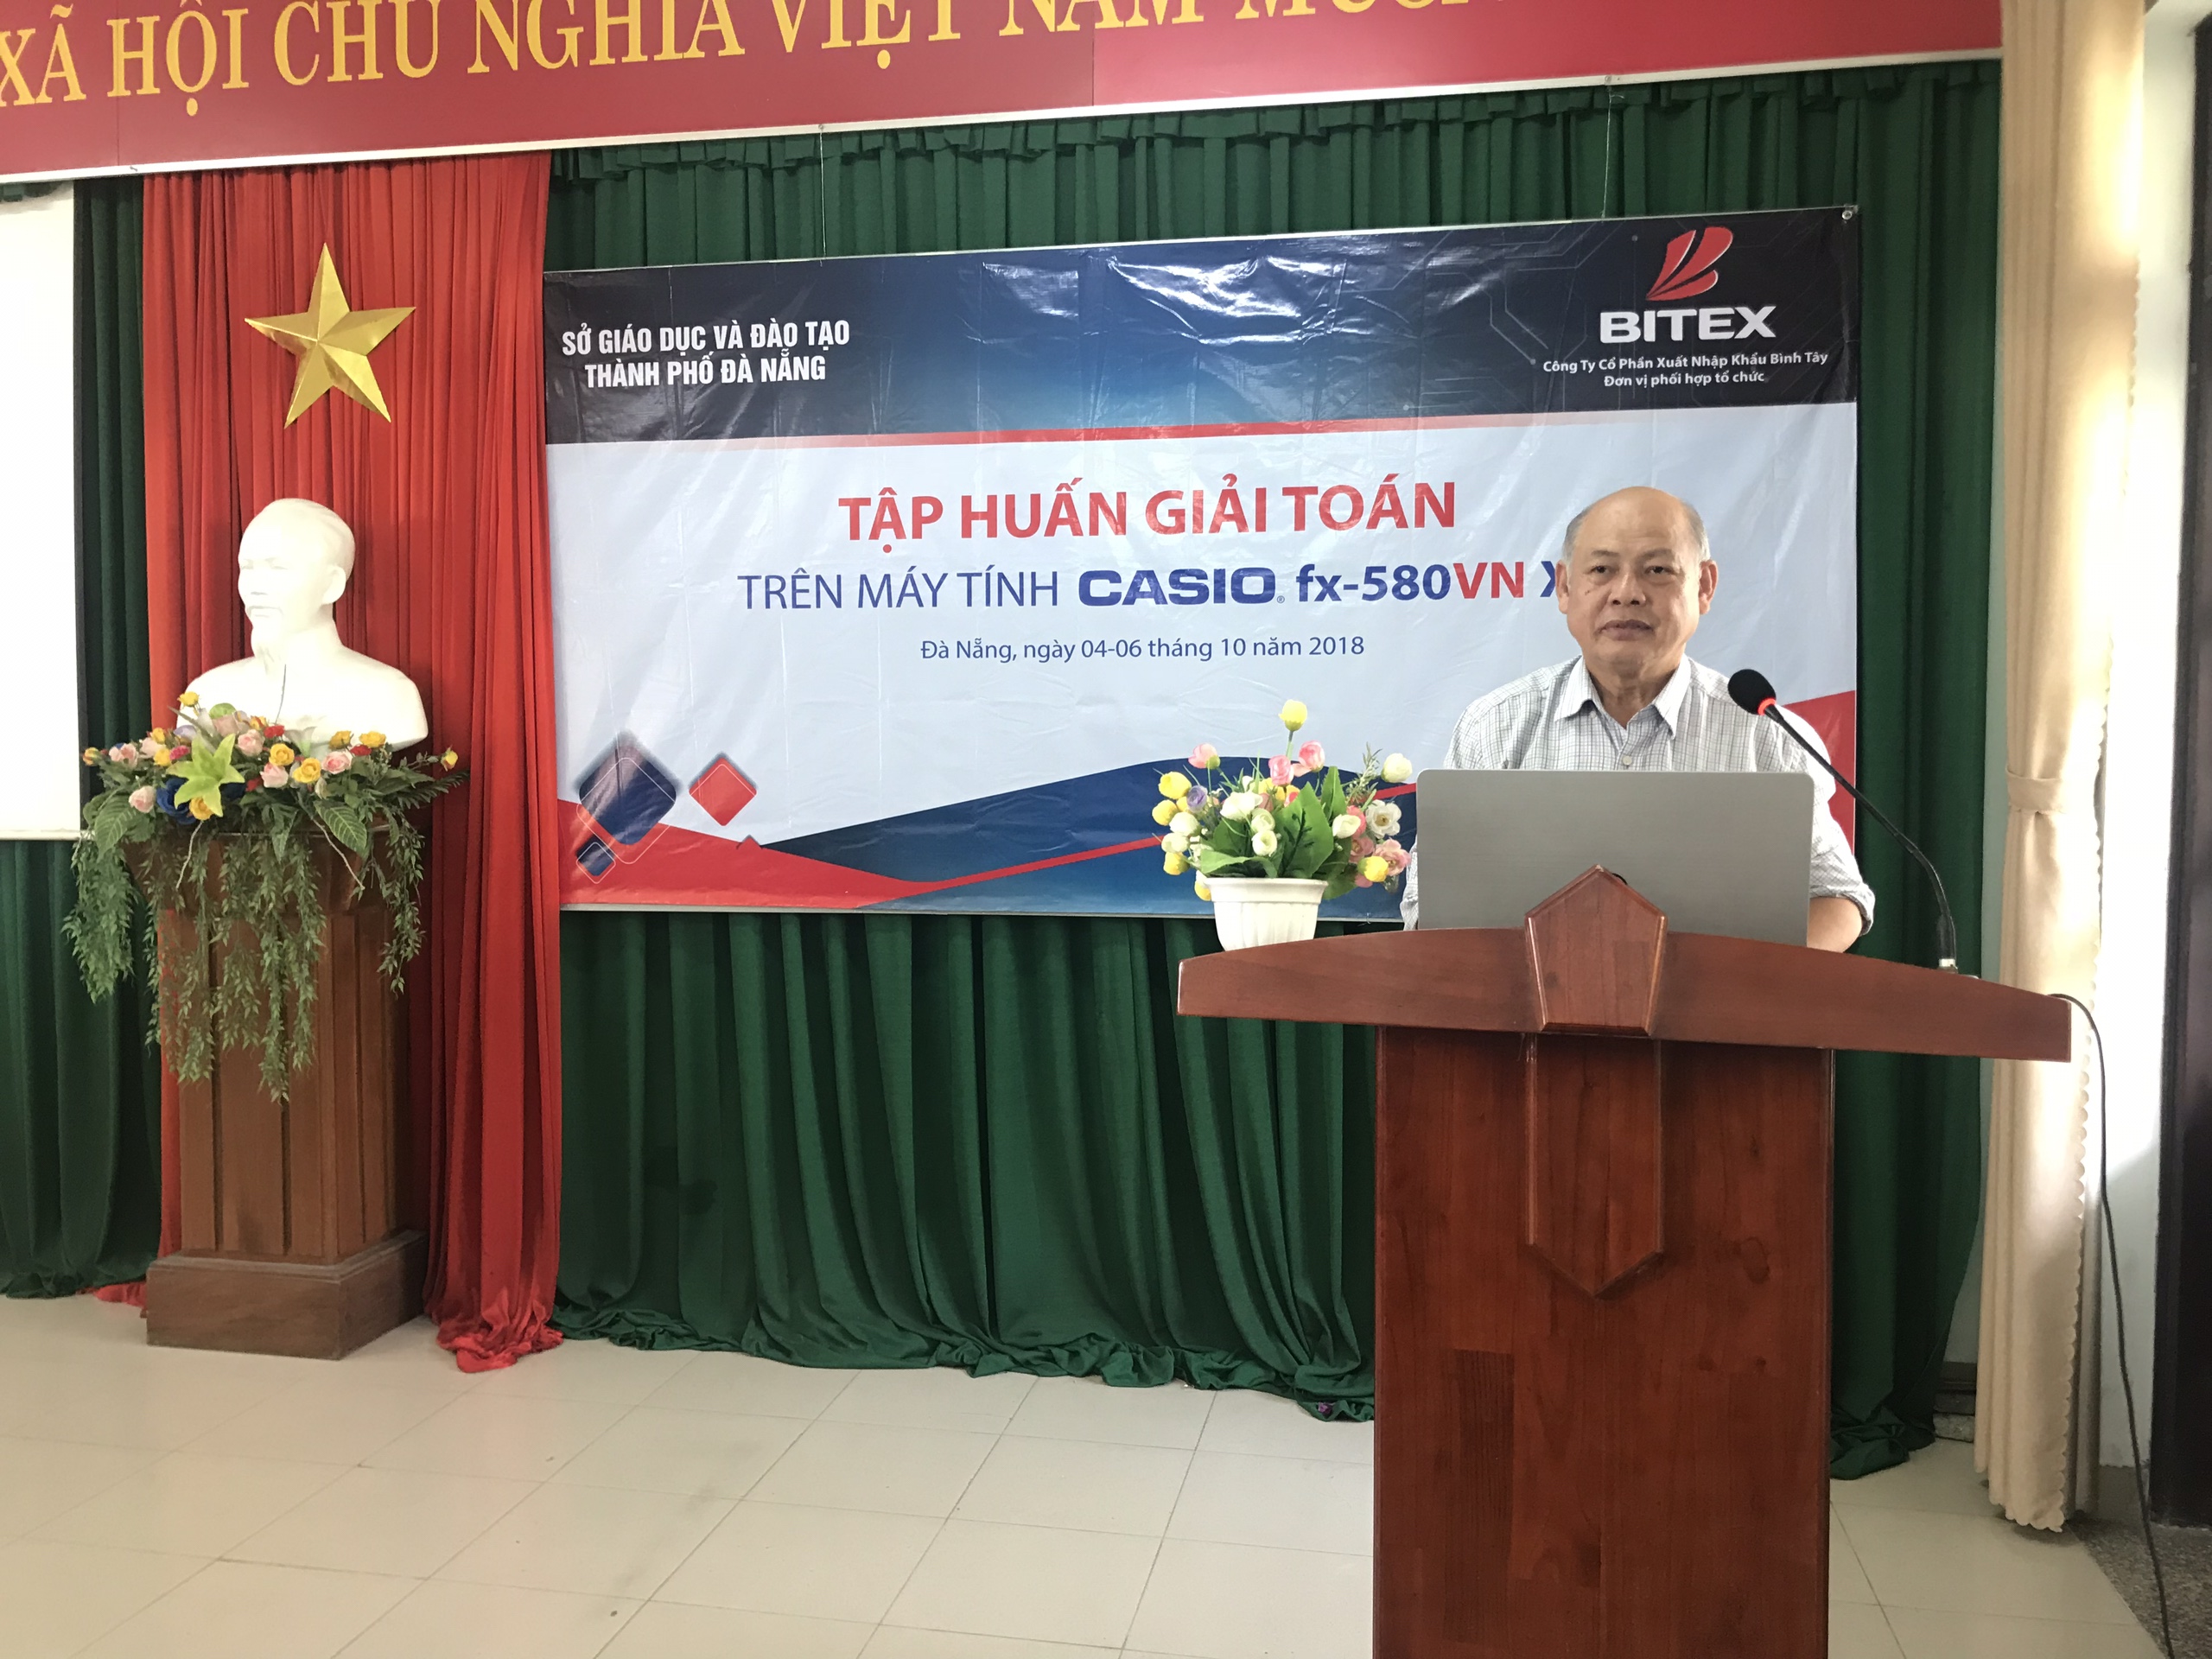 5. Quang canh giao vien Toan THCS TP. Da Nang tham gia lop tap huan do TS. Nguyen Thai Son bao cao 4